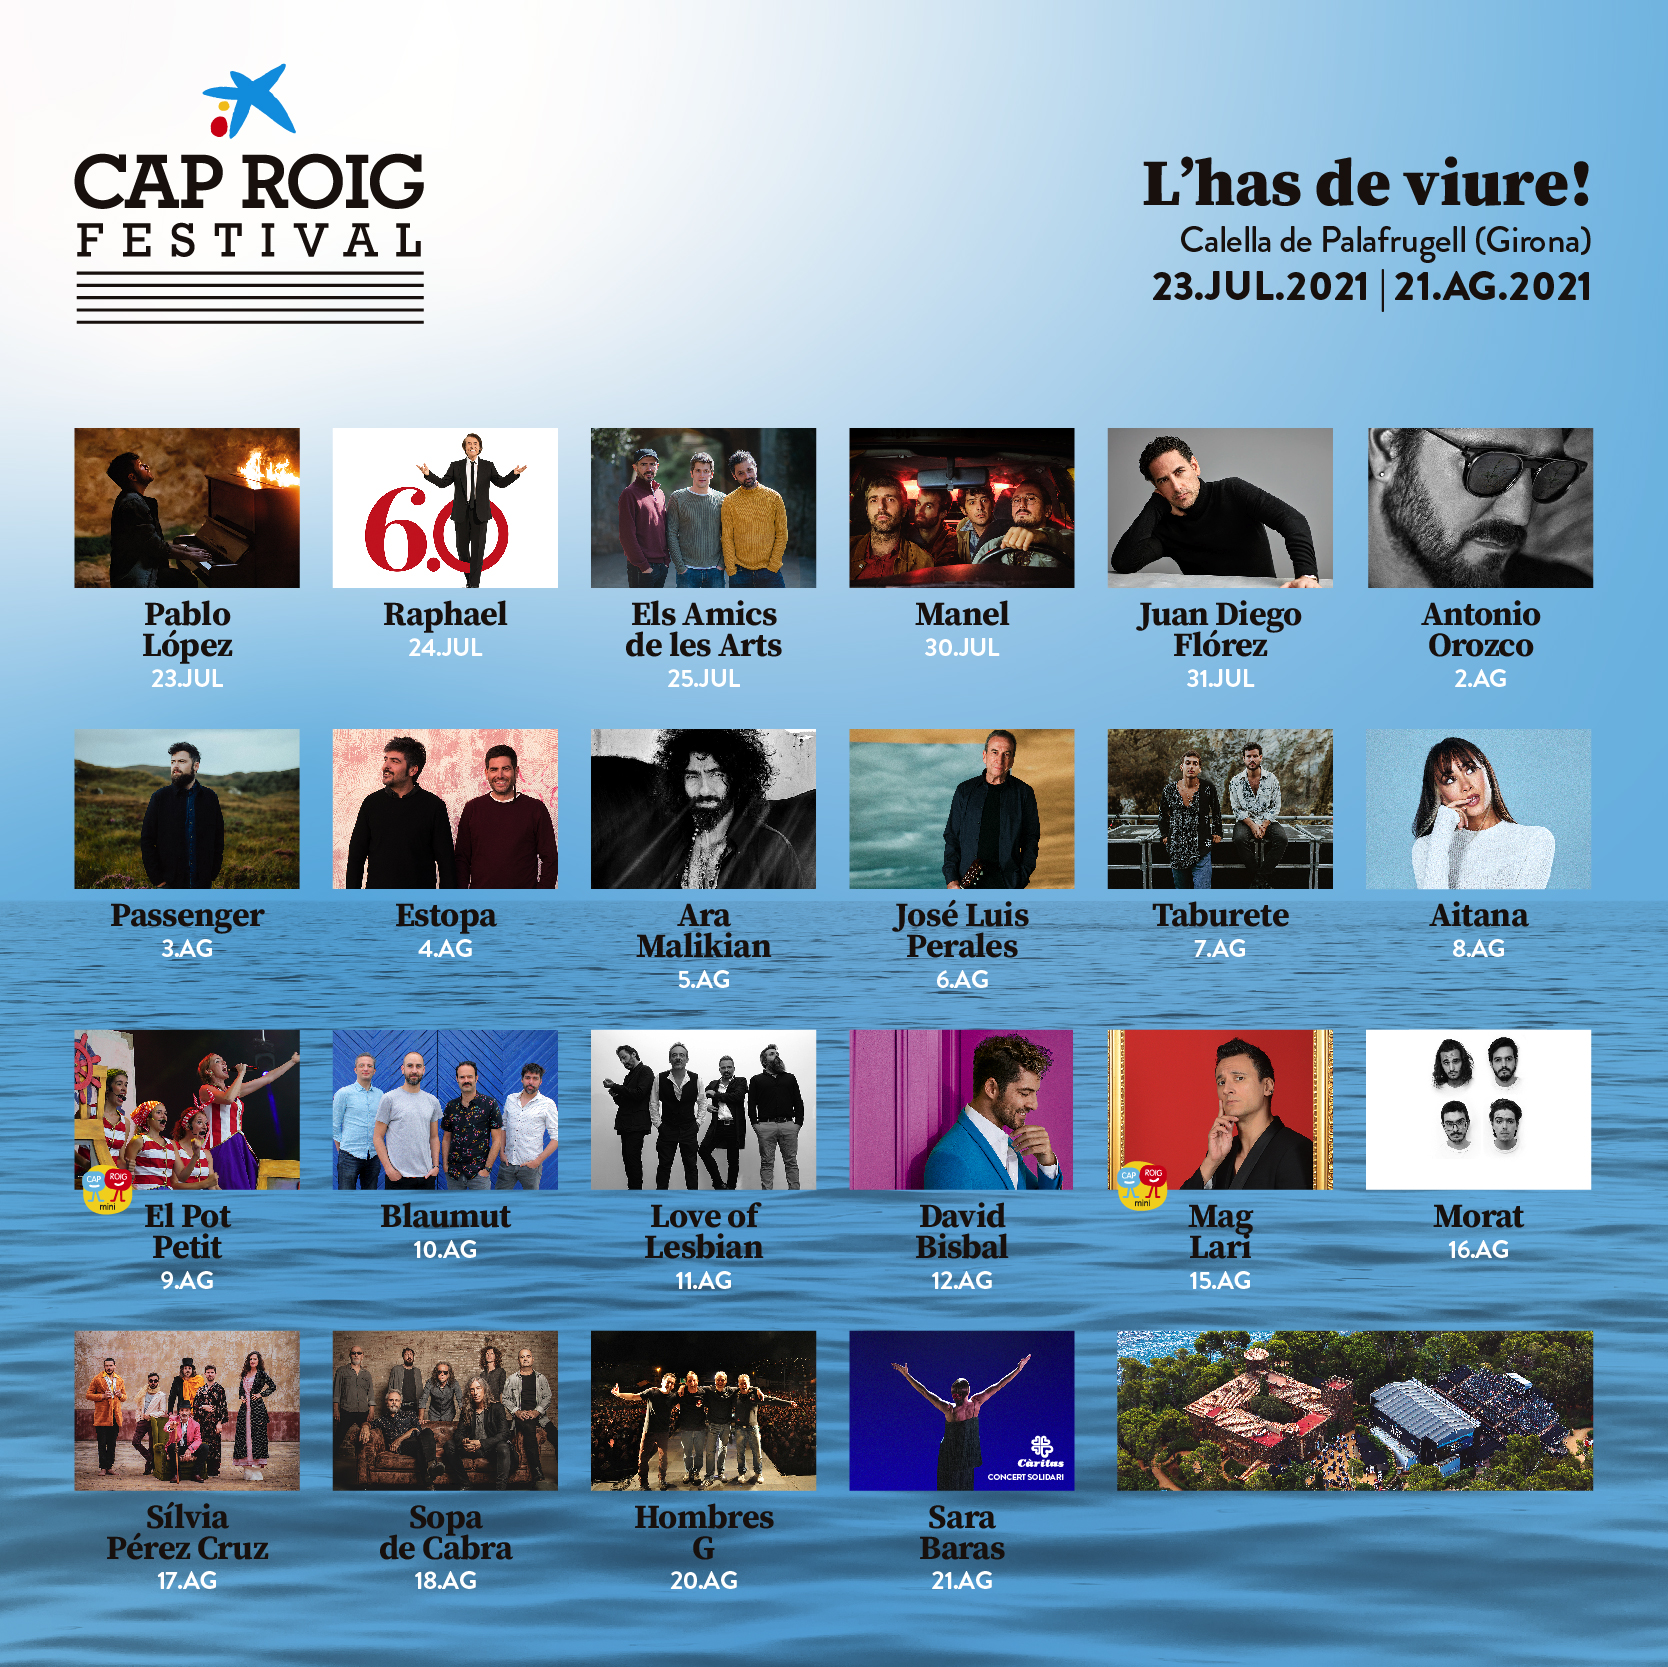 El Festival de Cap Roig vuelve a reunir a las principales estrellas del momento en su 21ª edición